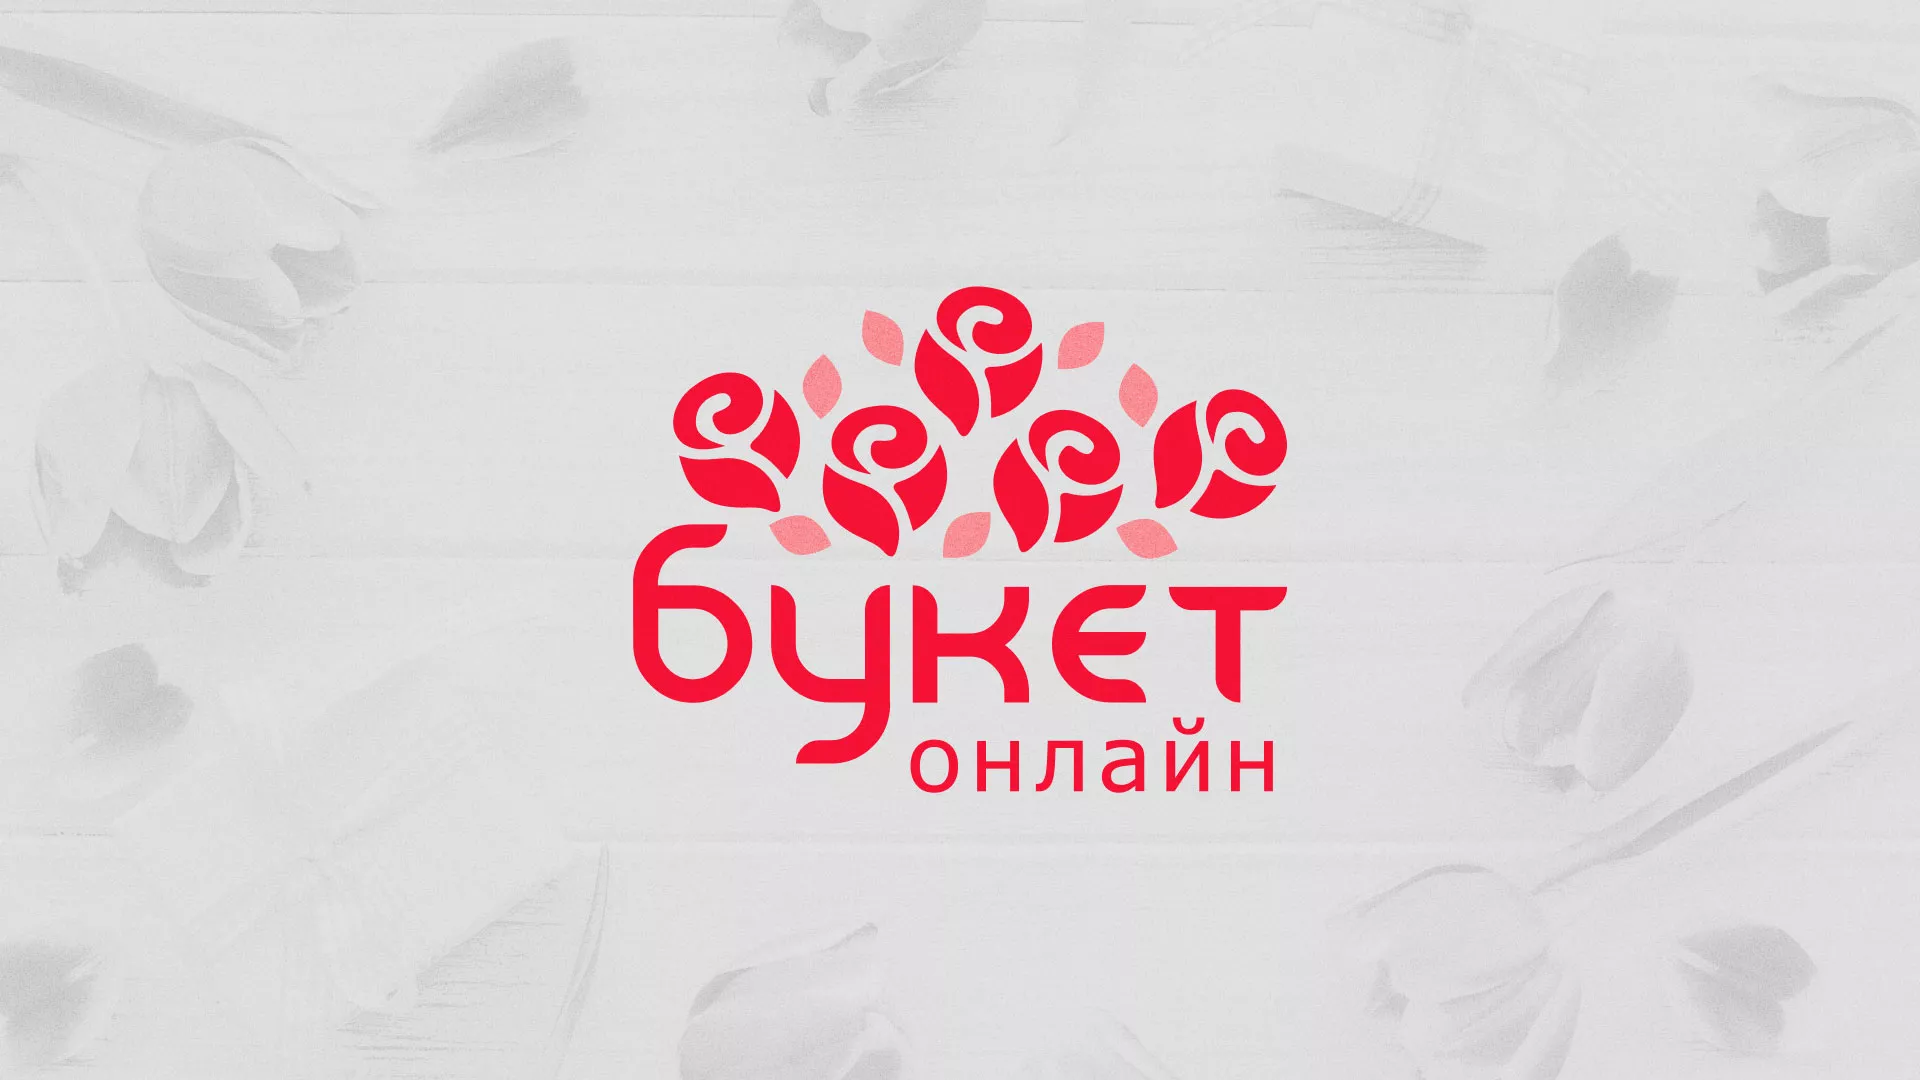 Создание интернет-магазина «Букет-онлайн» по цветам в Кольчугино